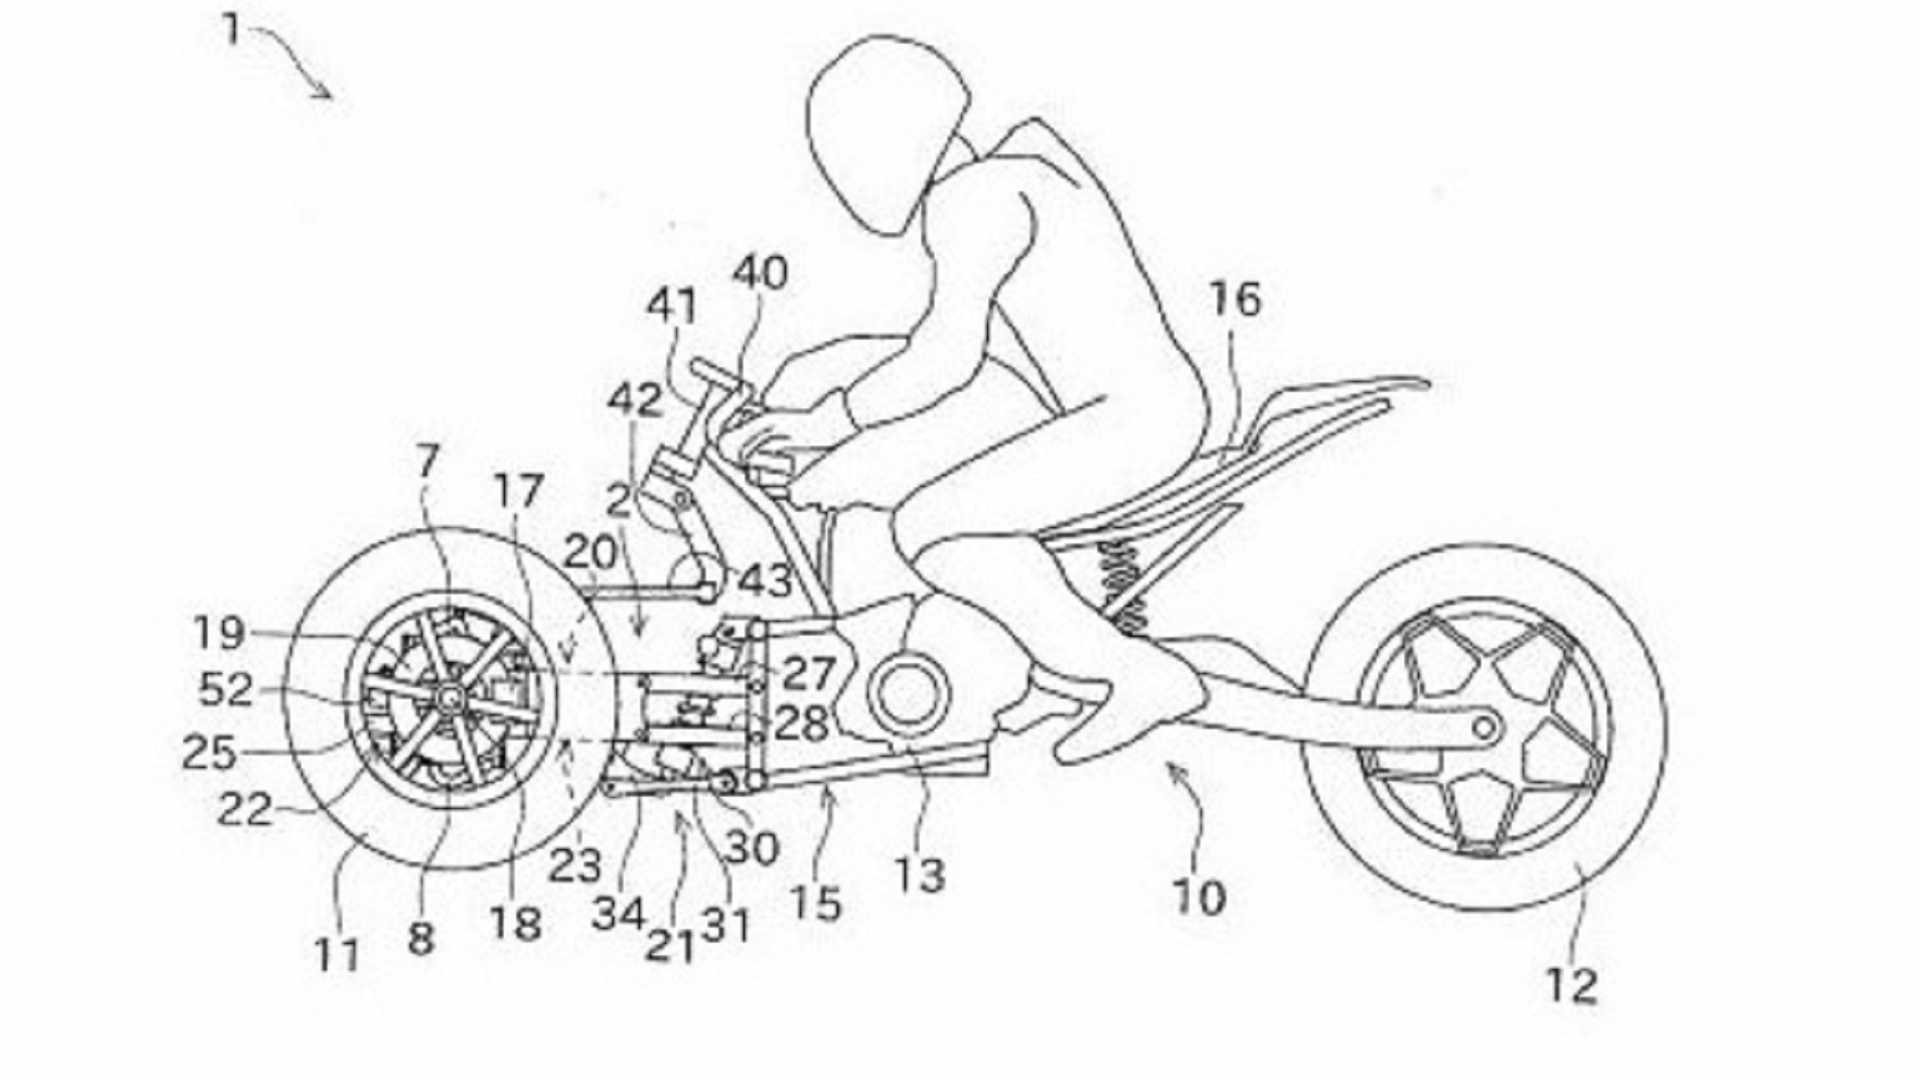 Patente da Kawasaki de 3 rodas